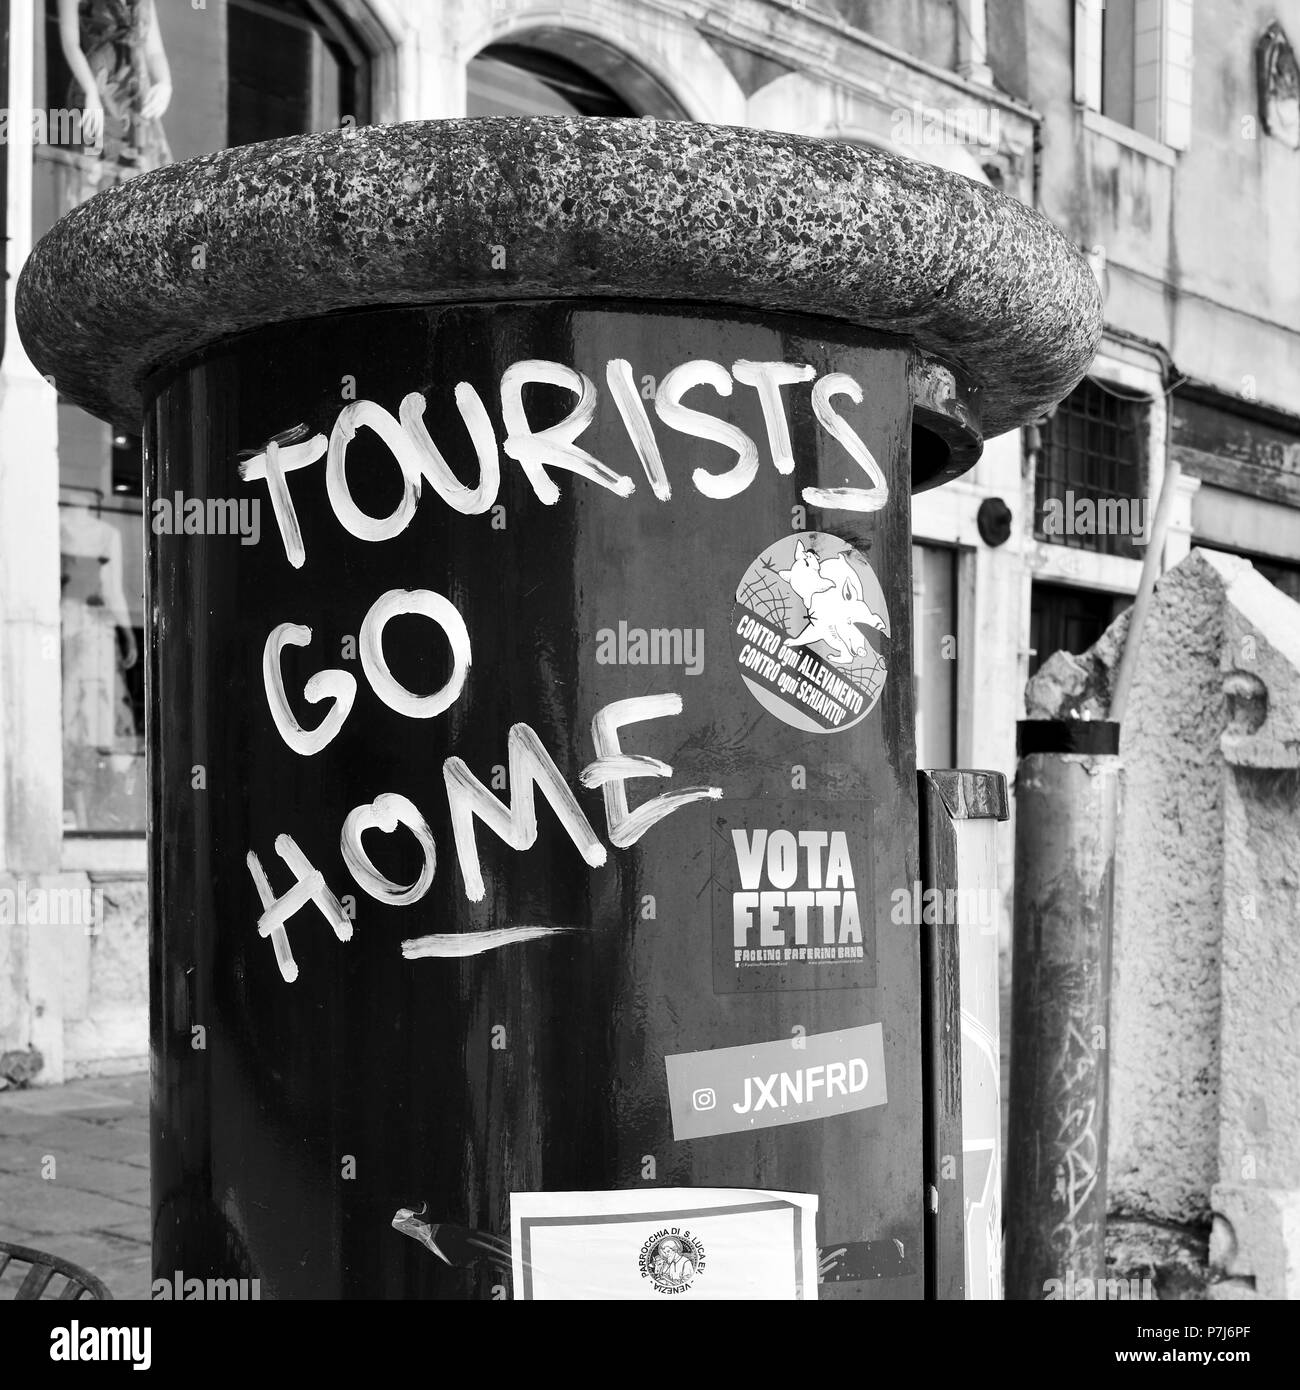 Venise, Italie - 17 juin 2018 : 'touristes' go home graffito à Venise close-up Banque D'Images